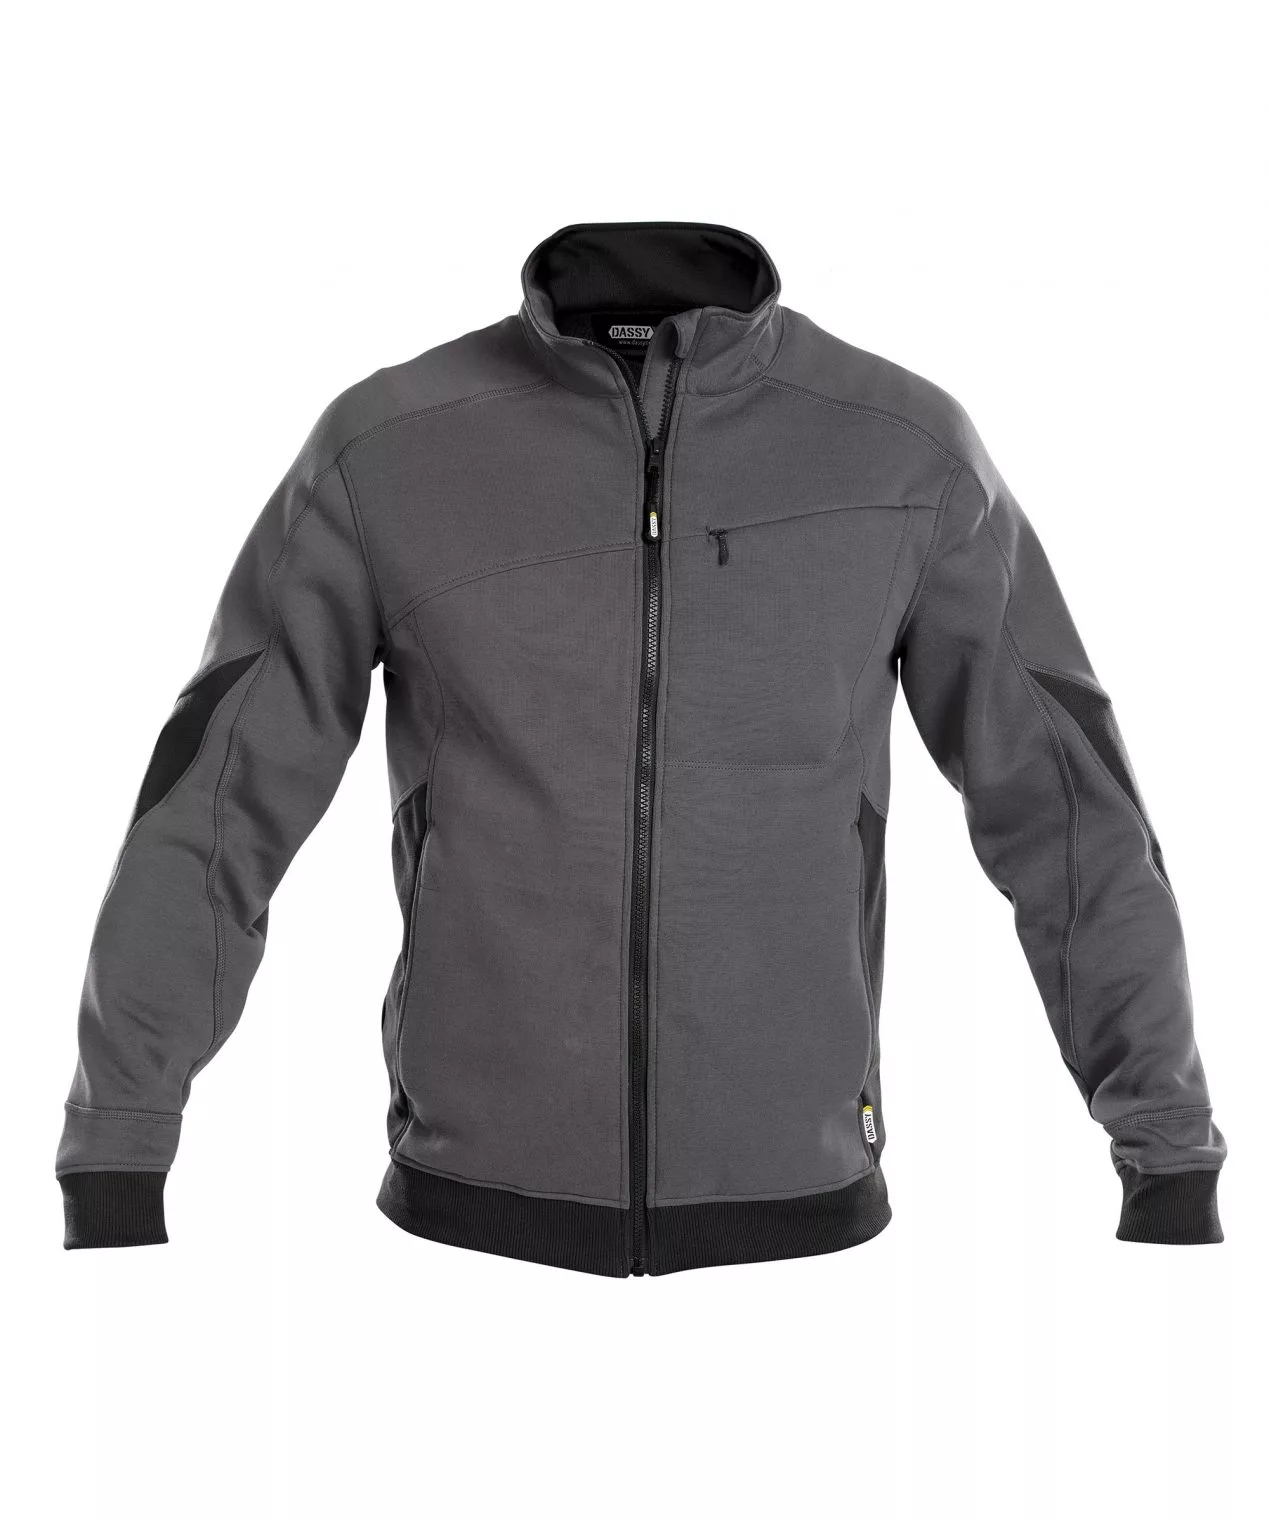 Dassy Velox: Sweatshirt Für Männer, Die Qualität Schätzen, Grau